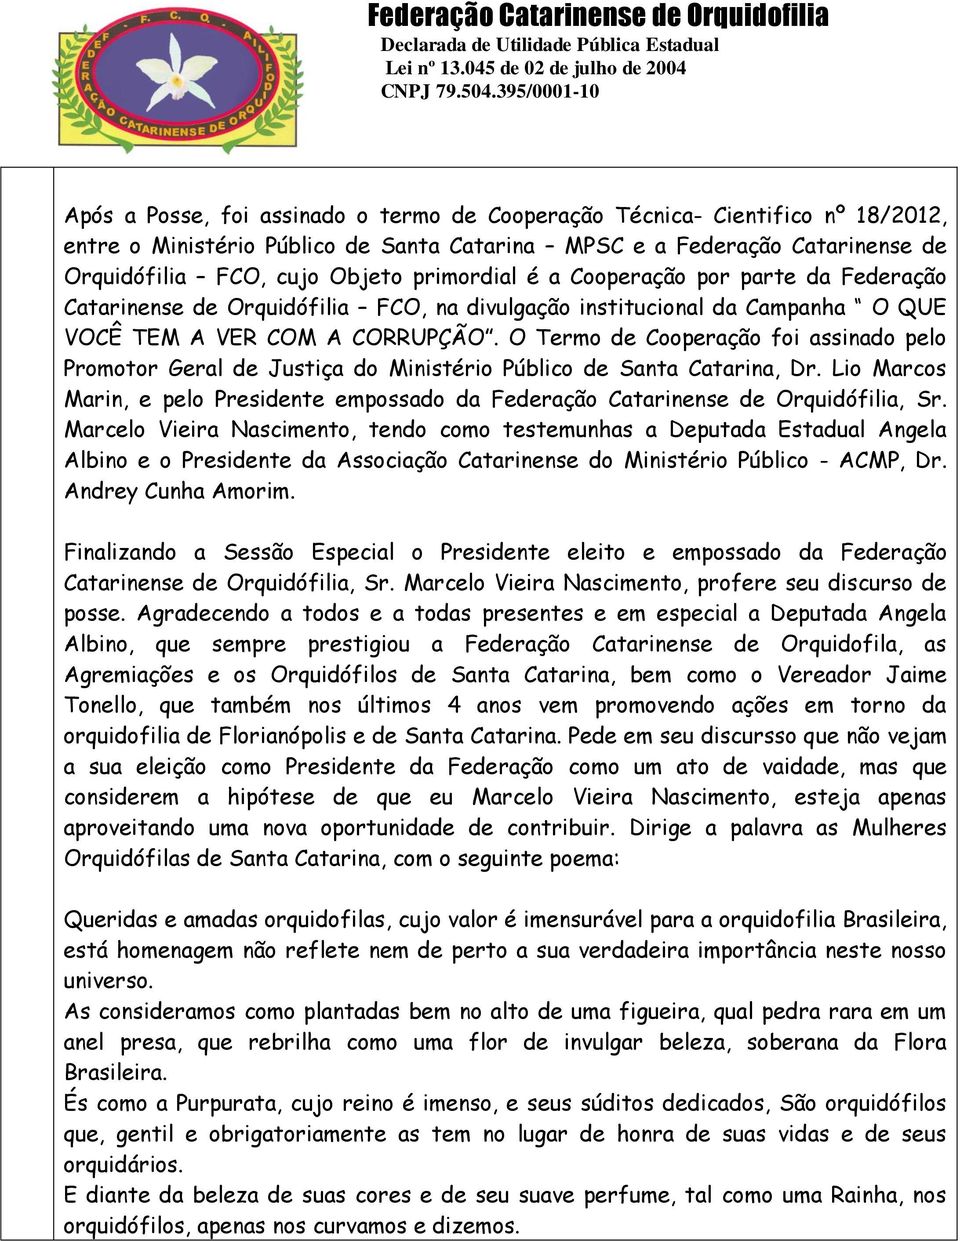 O Termo de Cooperação foi assinado pelo Promotor Geral de Justiça do Ministério Público de Santa Catarina, Dr.